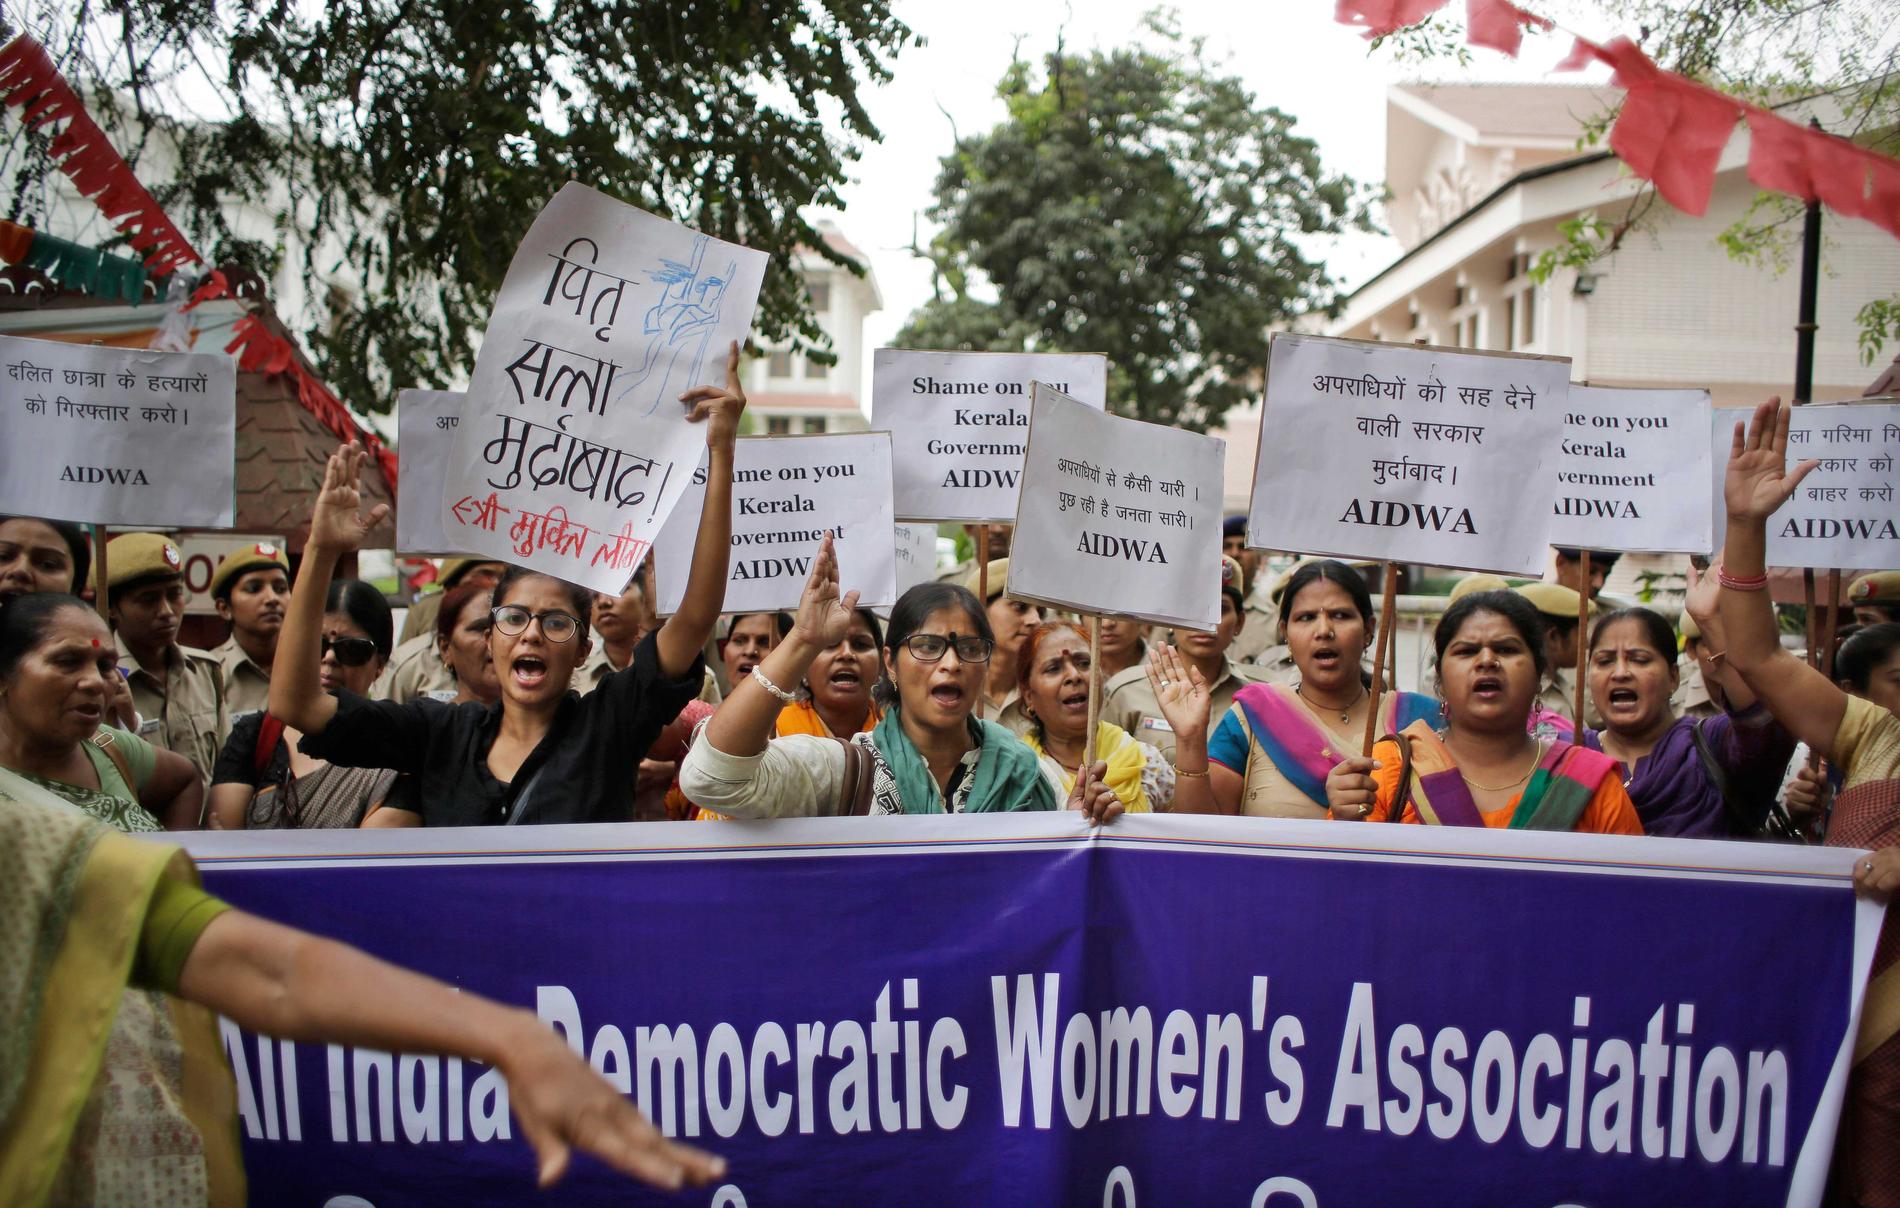 Aktivister från organisationen ”All India Democratic Women's Association” protesterar mot våldtäkten och mordet på en kvinna i Kerala i Indien den 4 maj 2016.